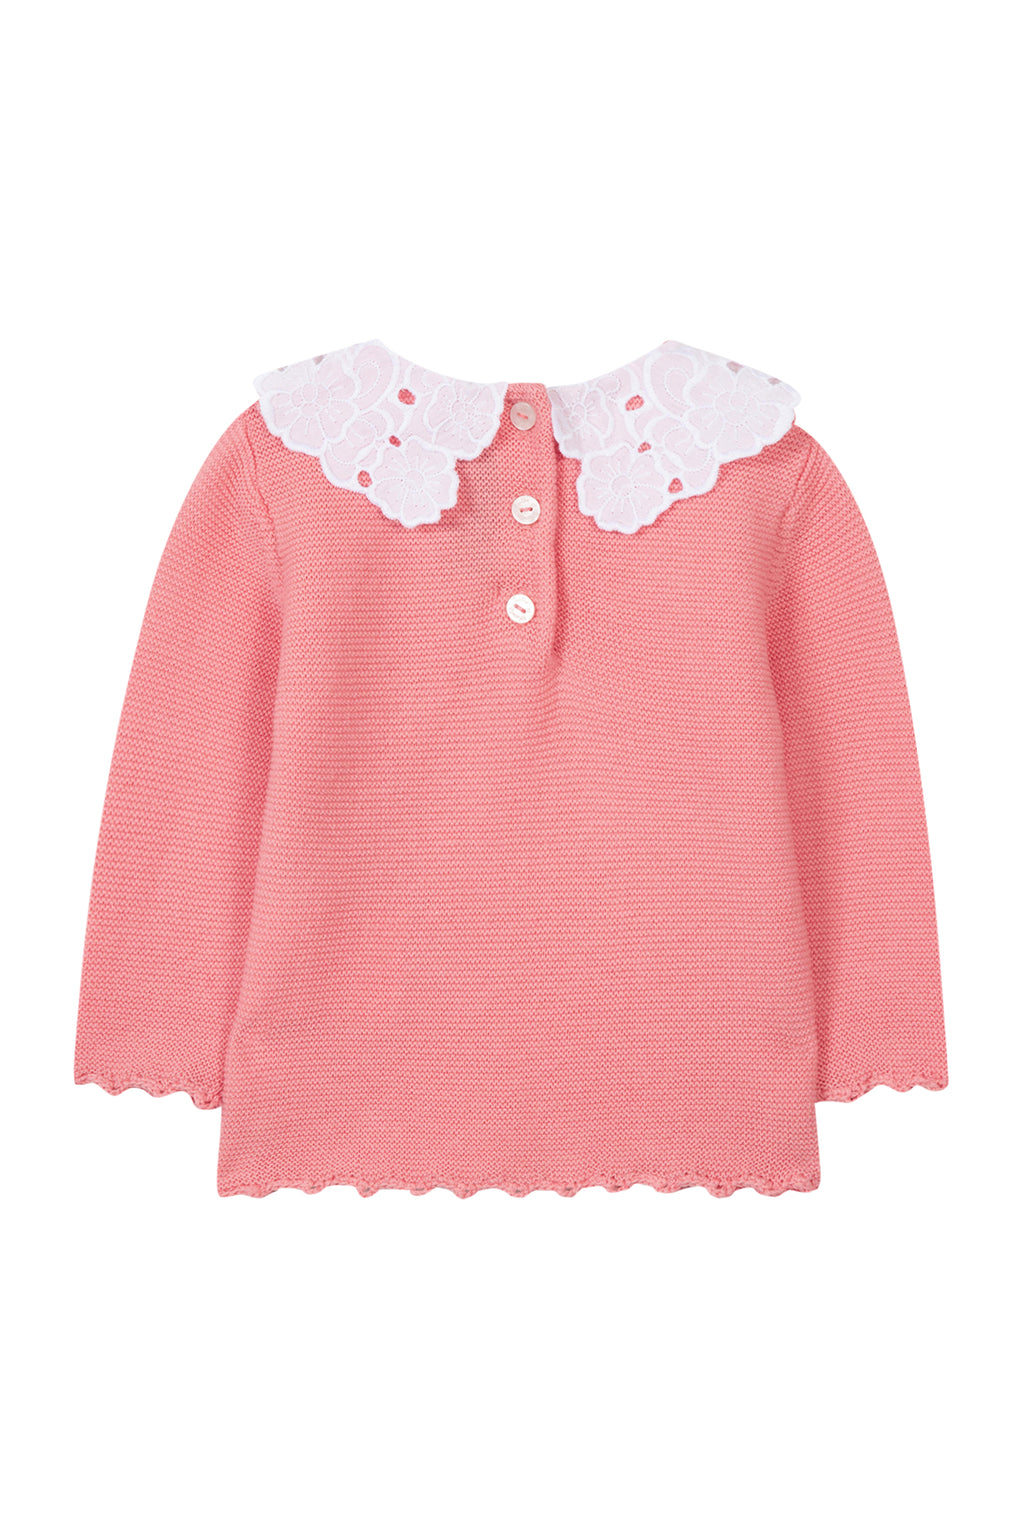 Sweater - Pink Peter pan collar